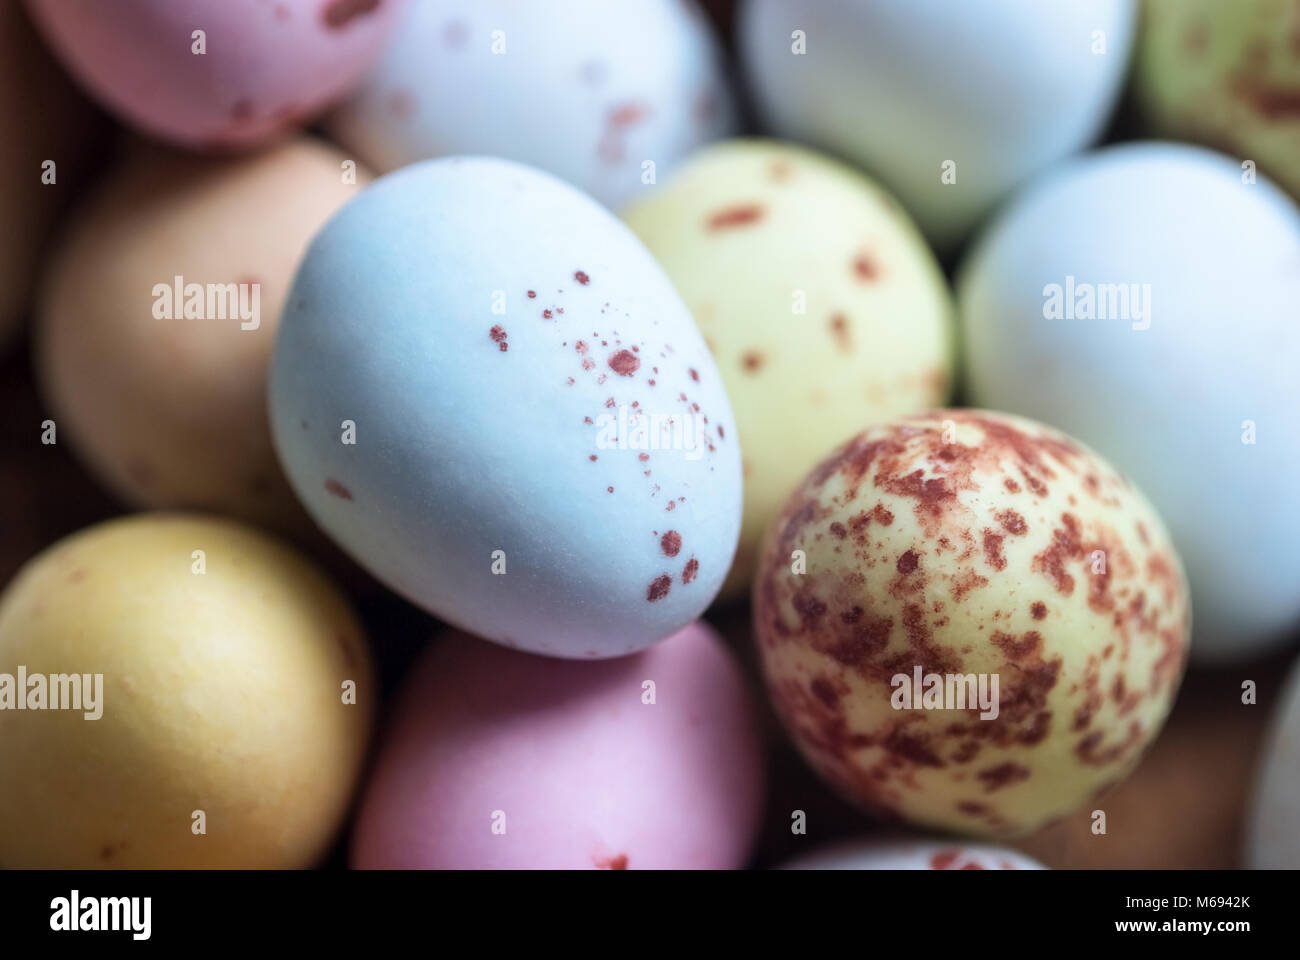 Close Up (Makro) Der kleine eiförmige Ostern Süßigkeiten in verschiedenen Farben mit Festplatte gefleckten Schalen. Stockfoto